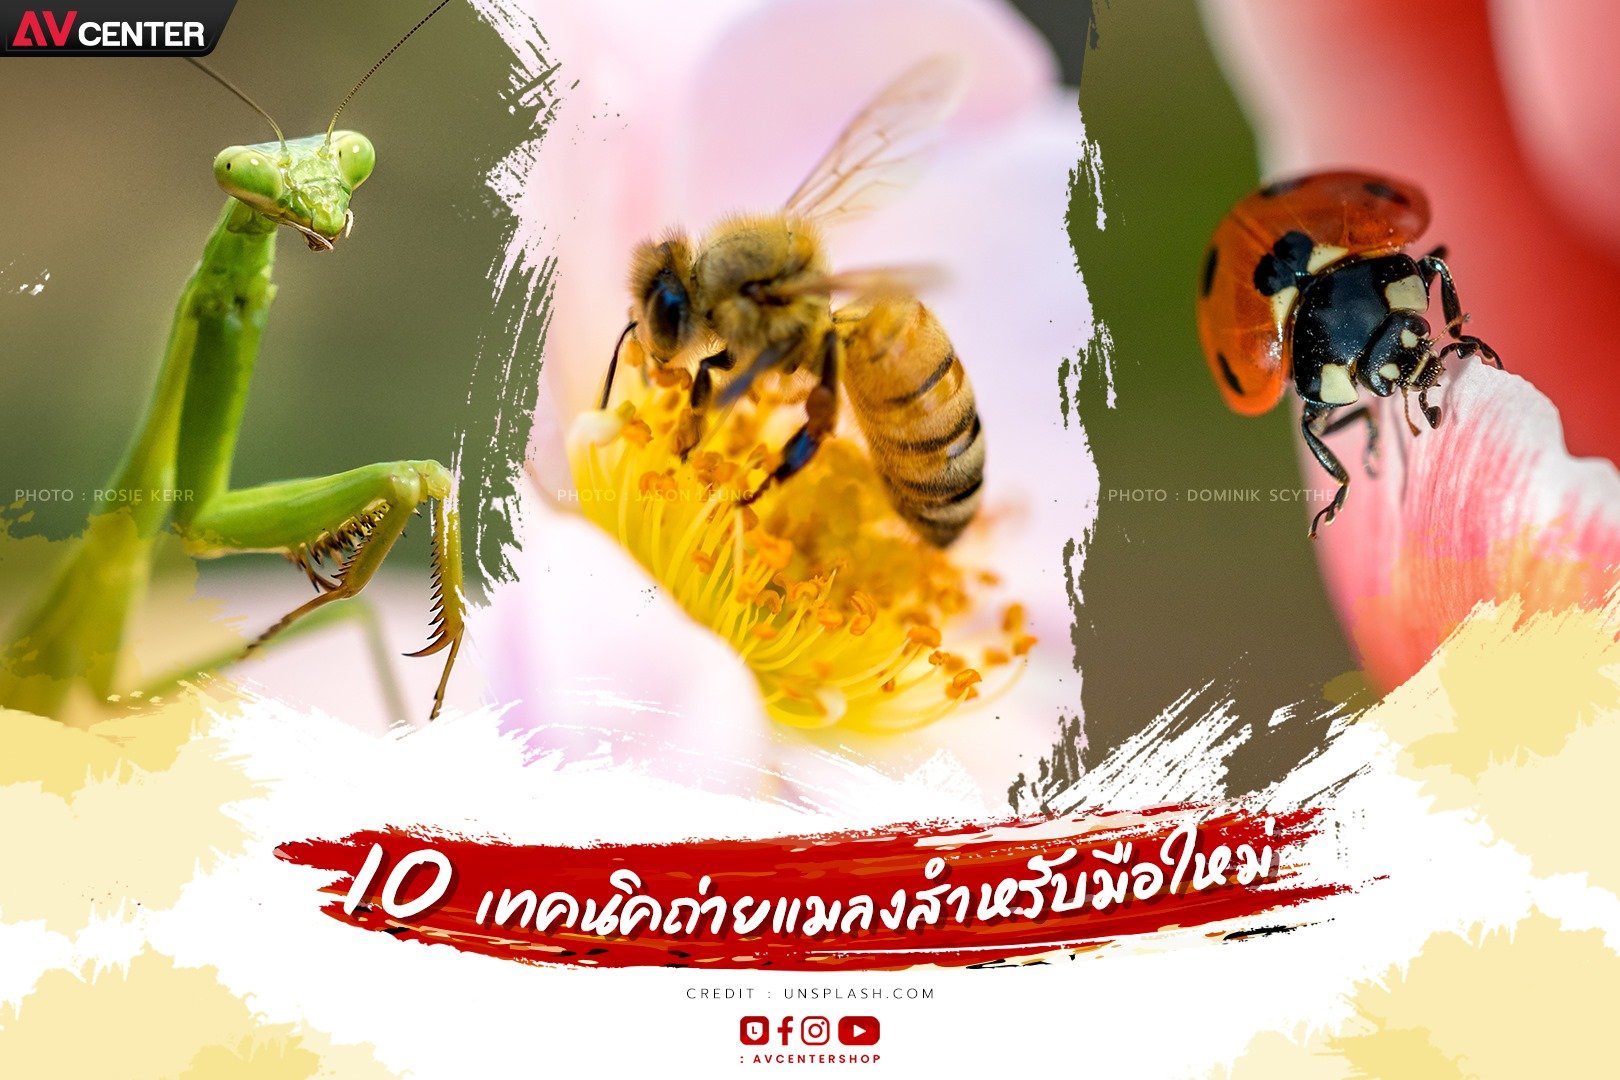 10 เทคถ่ายแมลงสำหรับมือใหม่ ถ่ายยังไงก็คม ไม่แพ้มืออาชีพ!